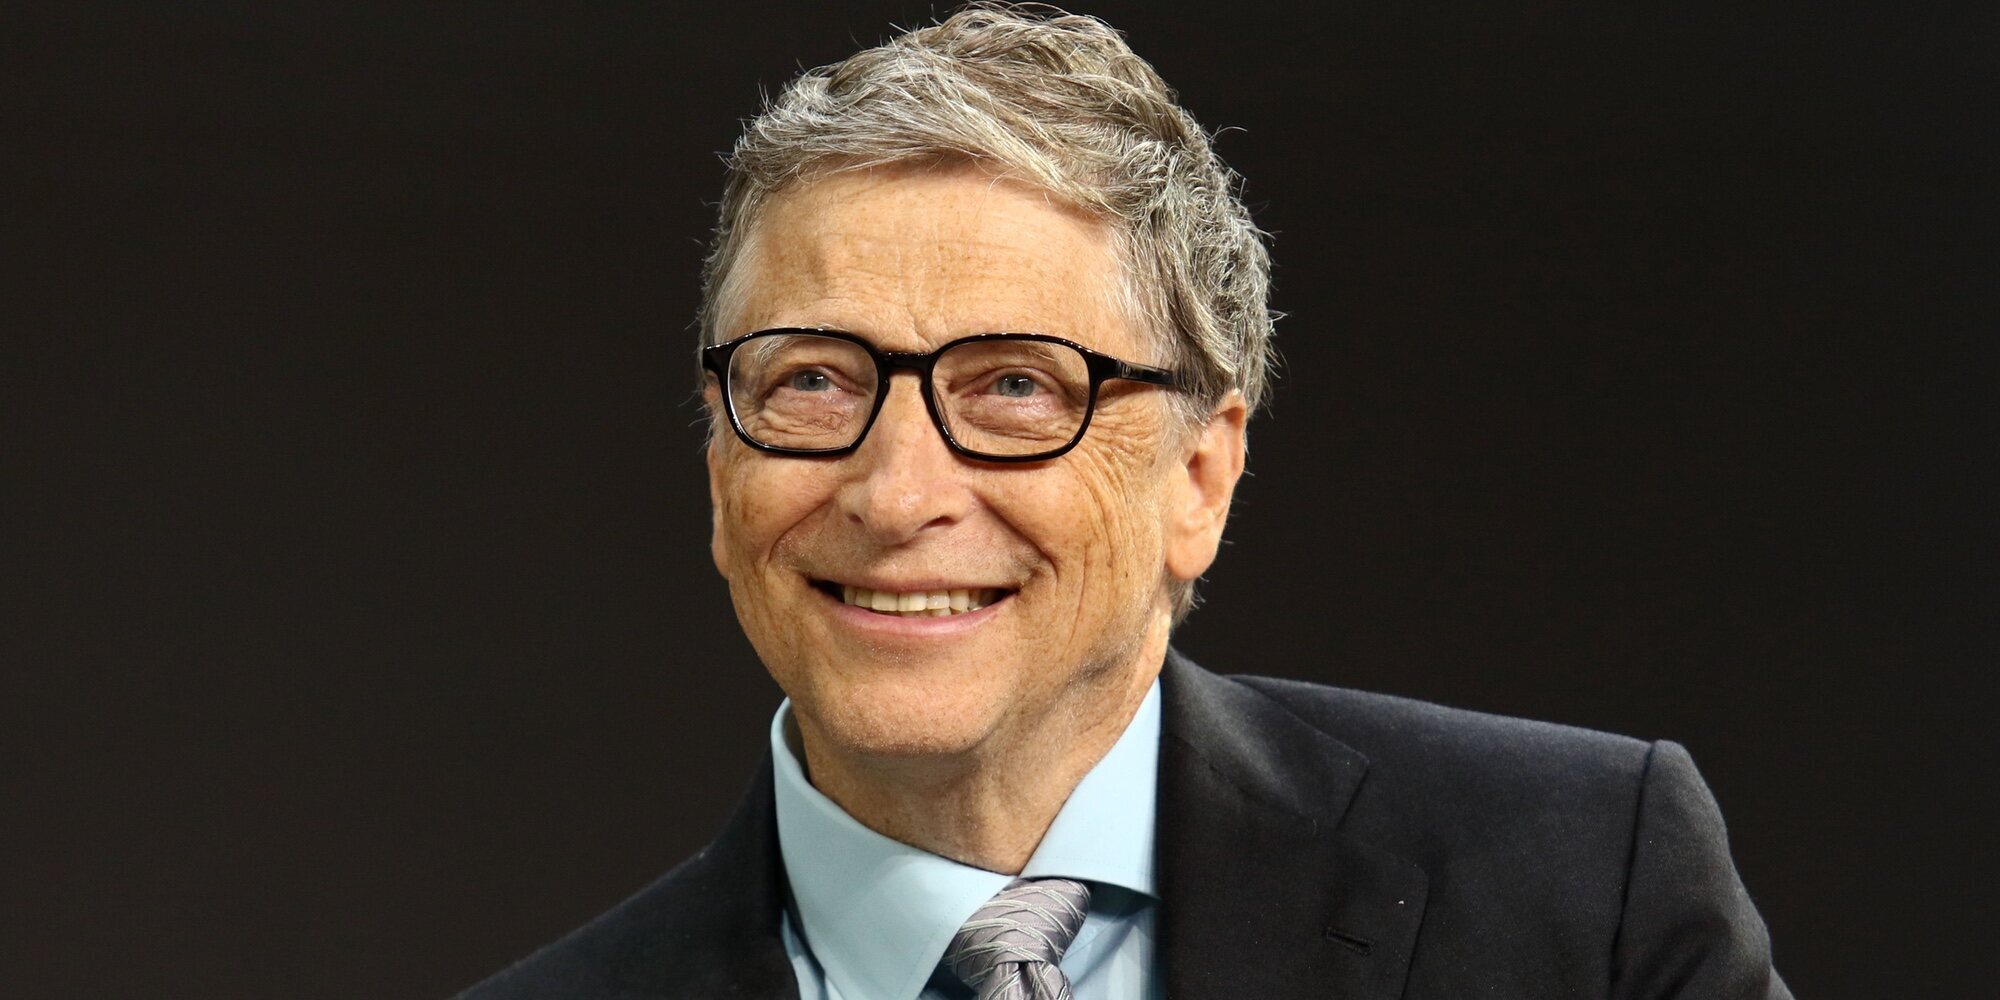 Bill Gates se sincera sobre su divorcio asumiendo su culpa: "Me volvería a casar con Melinda otra vez"